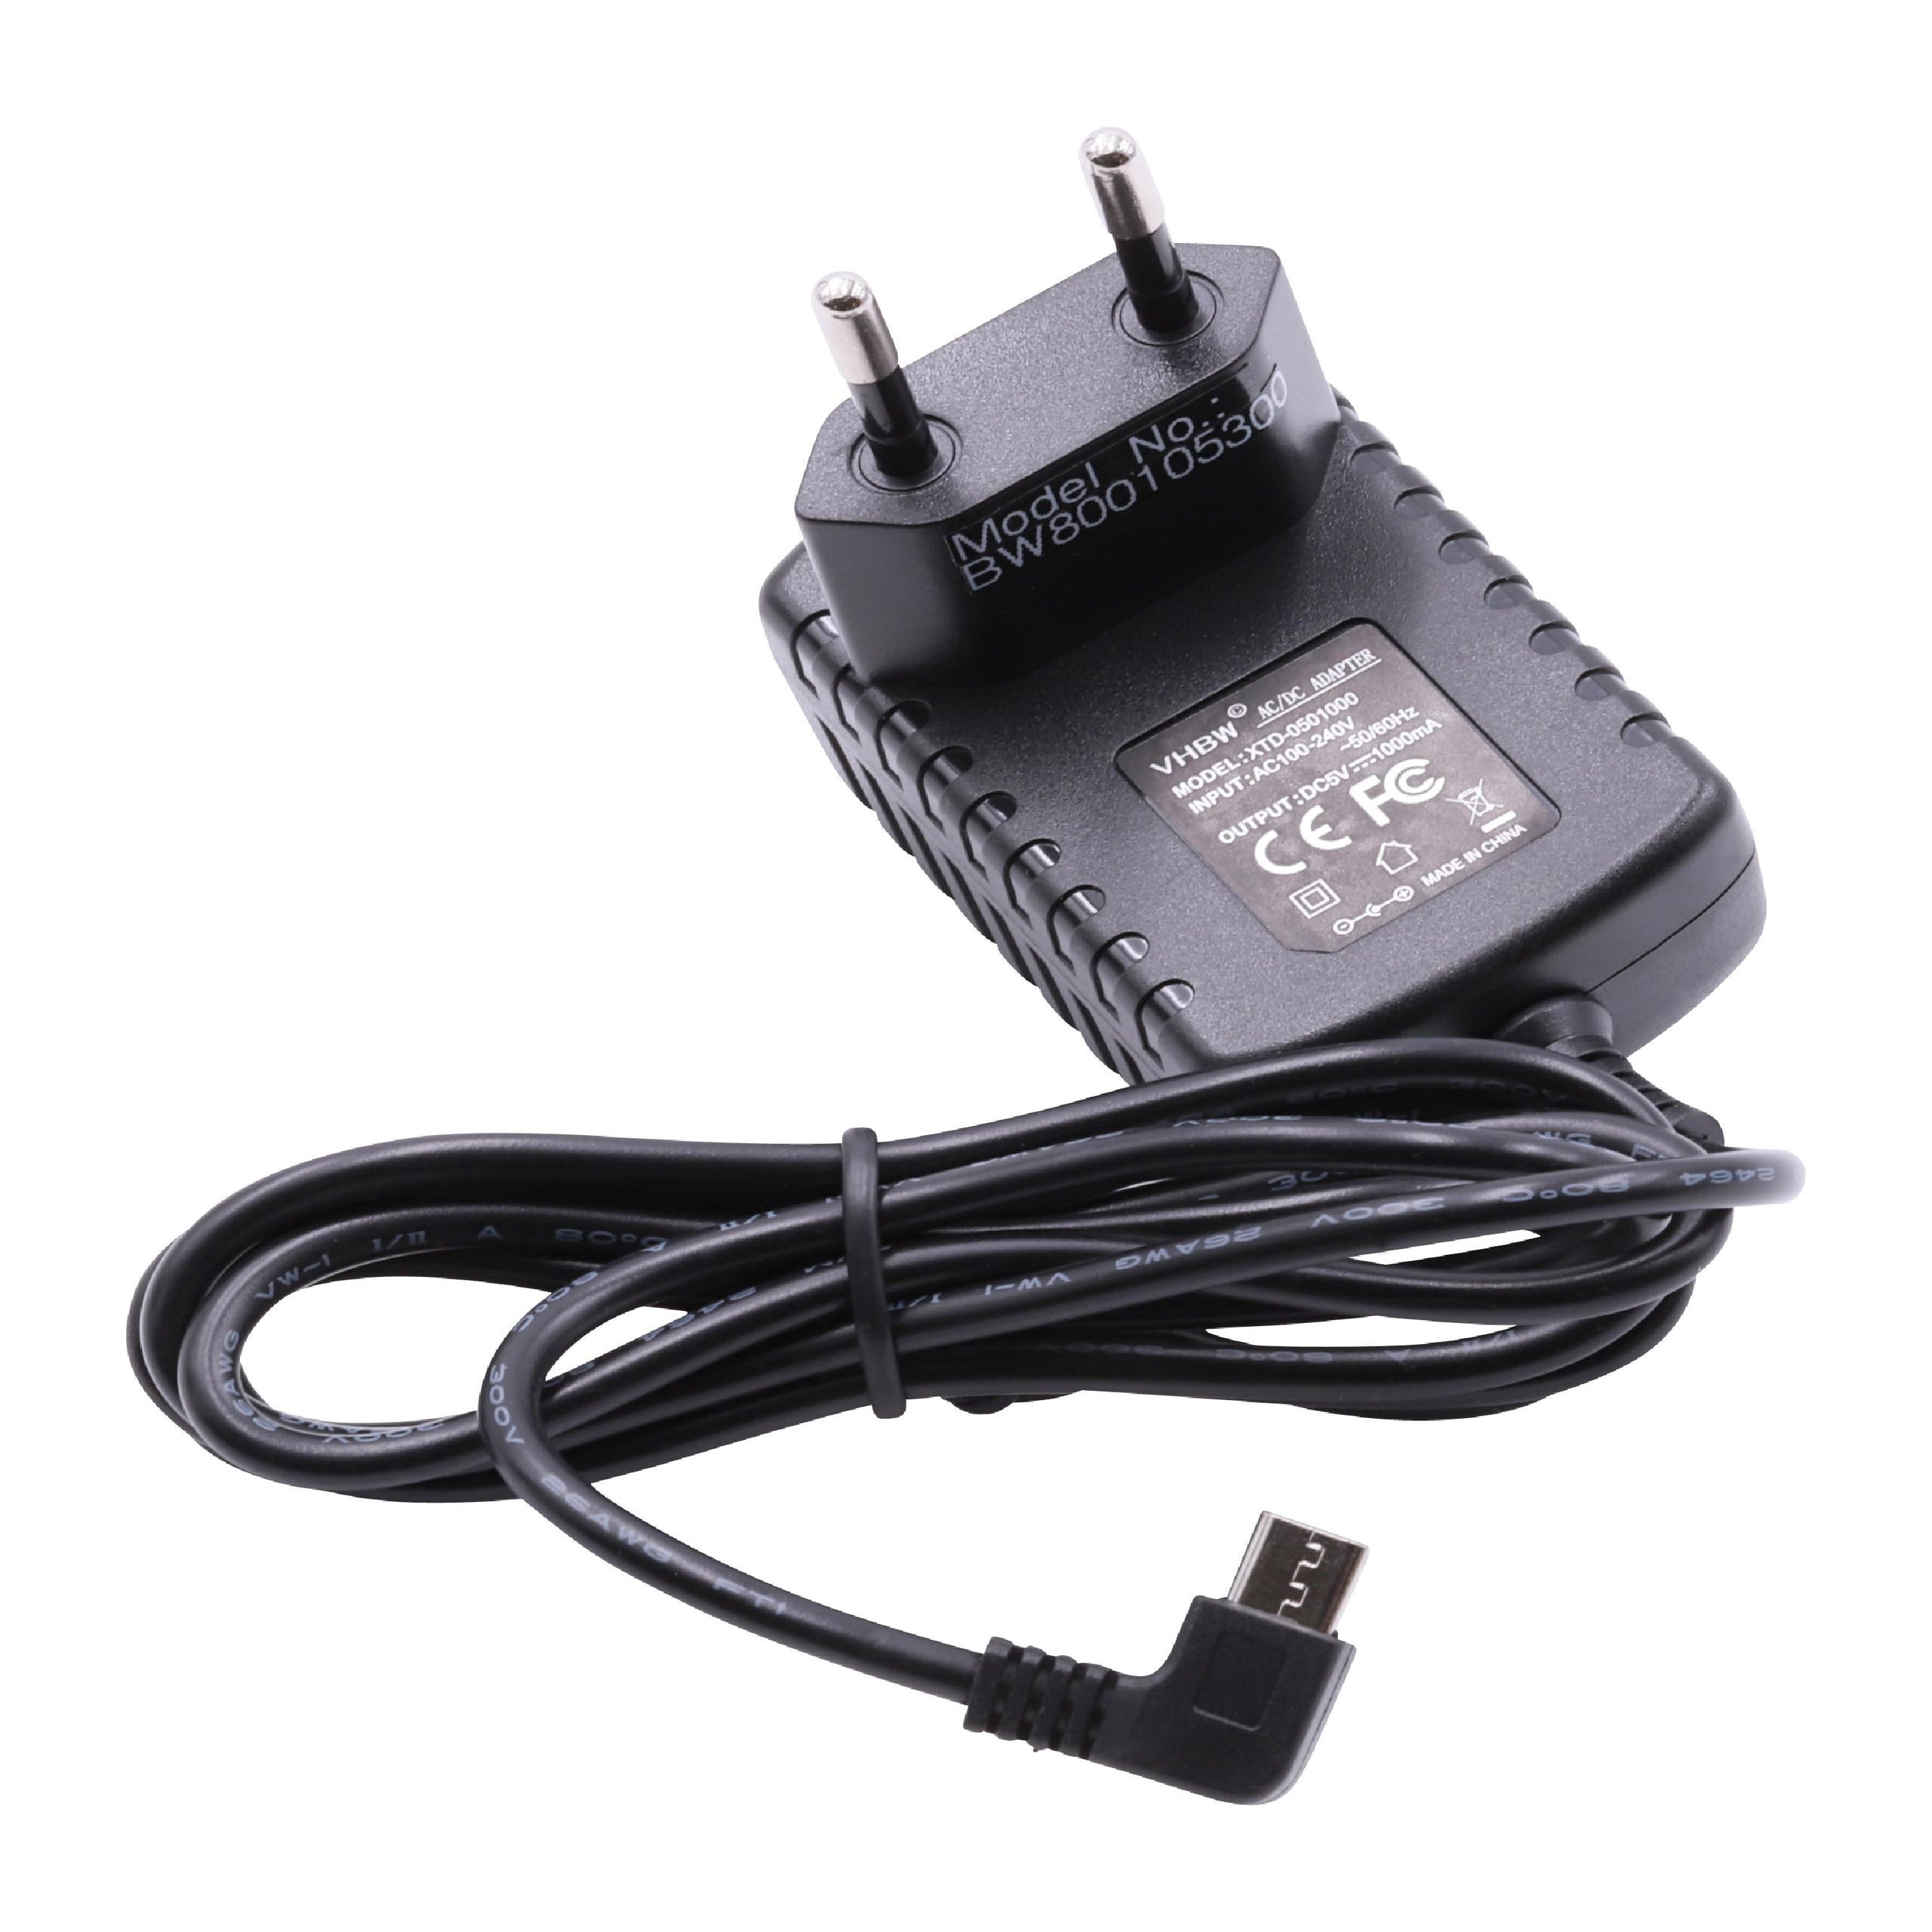 Vhbw alimentation 220 v, chargeur avec prise micro USB 2A (5V) pour  téléphones mobiles, smartphones, tablettes, etc.. longueur de câble 1.2 m  noir